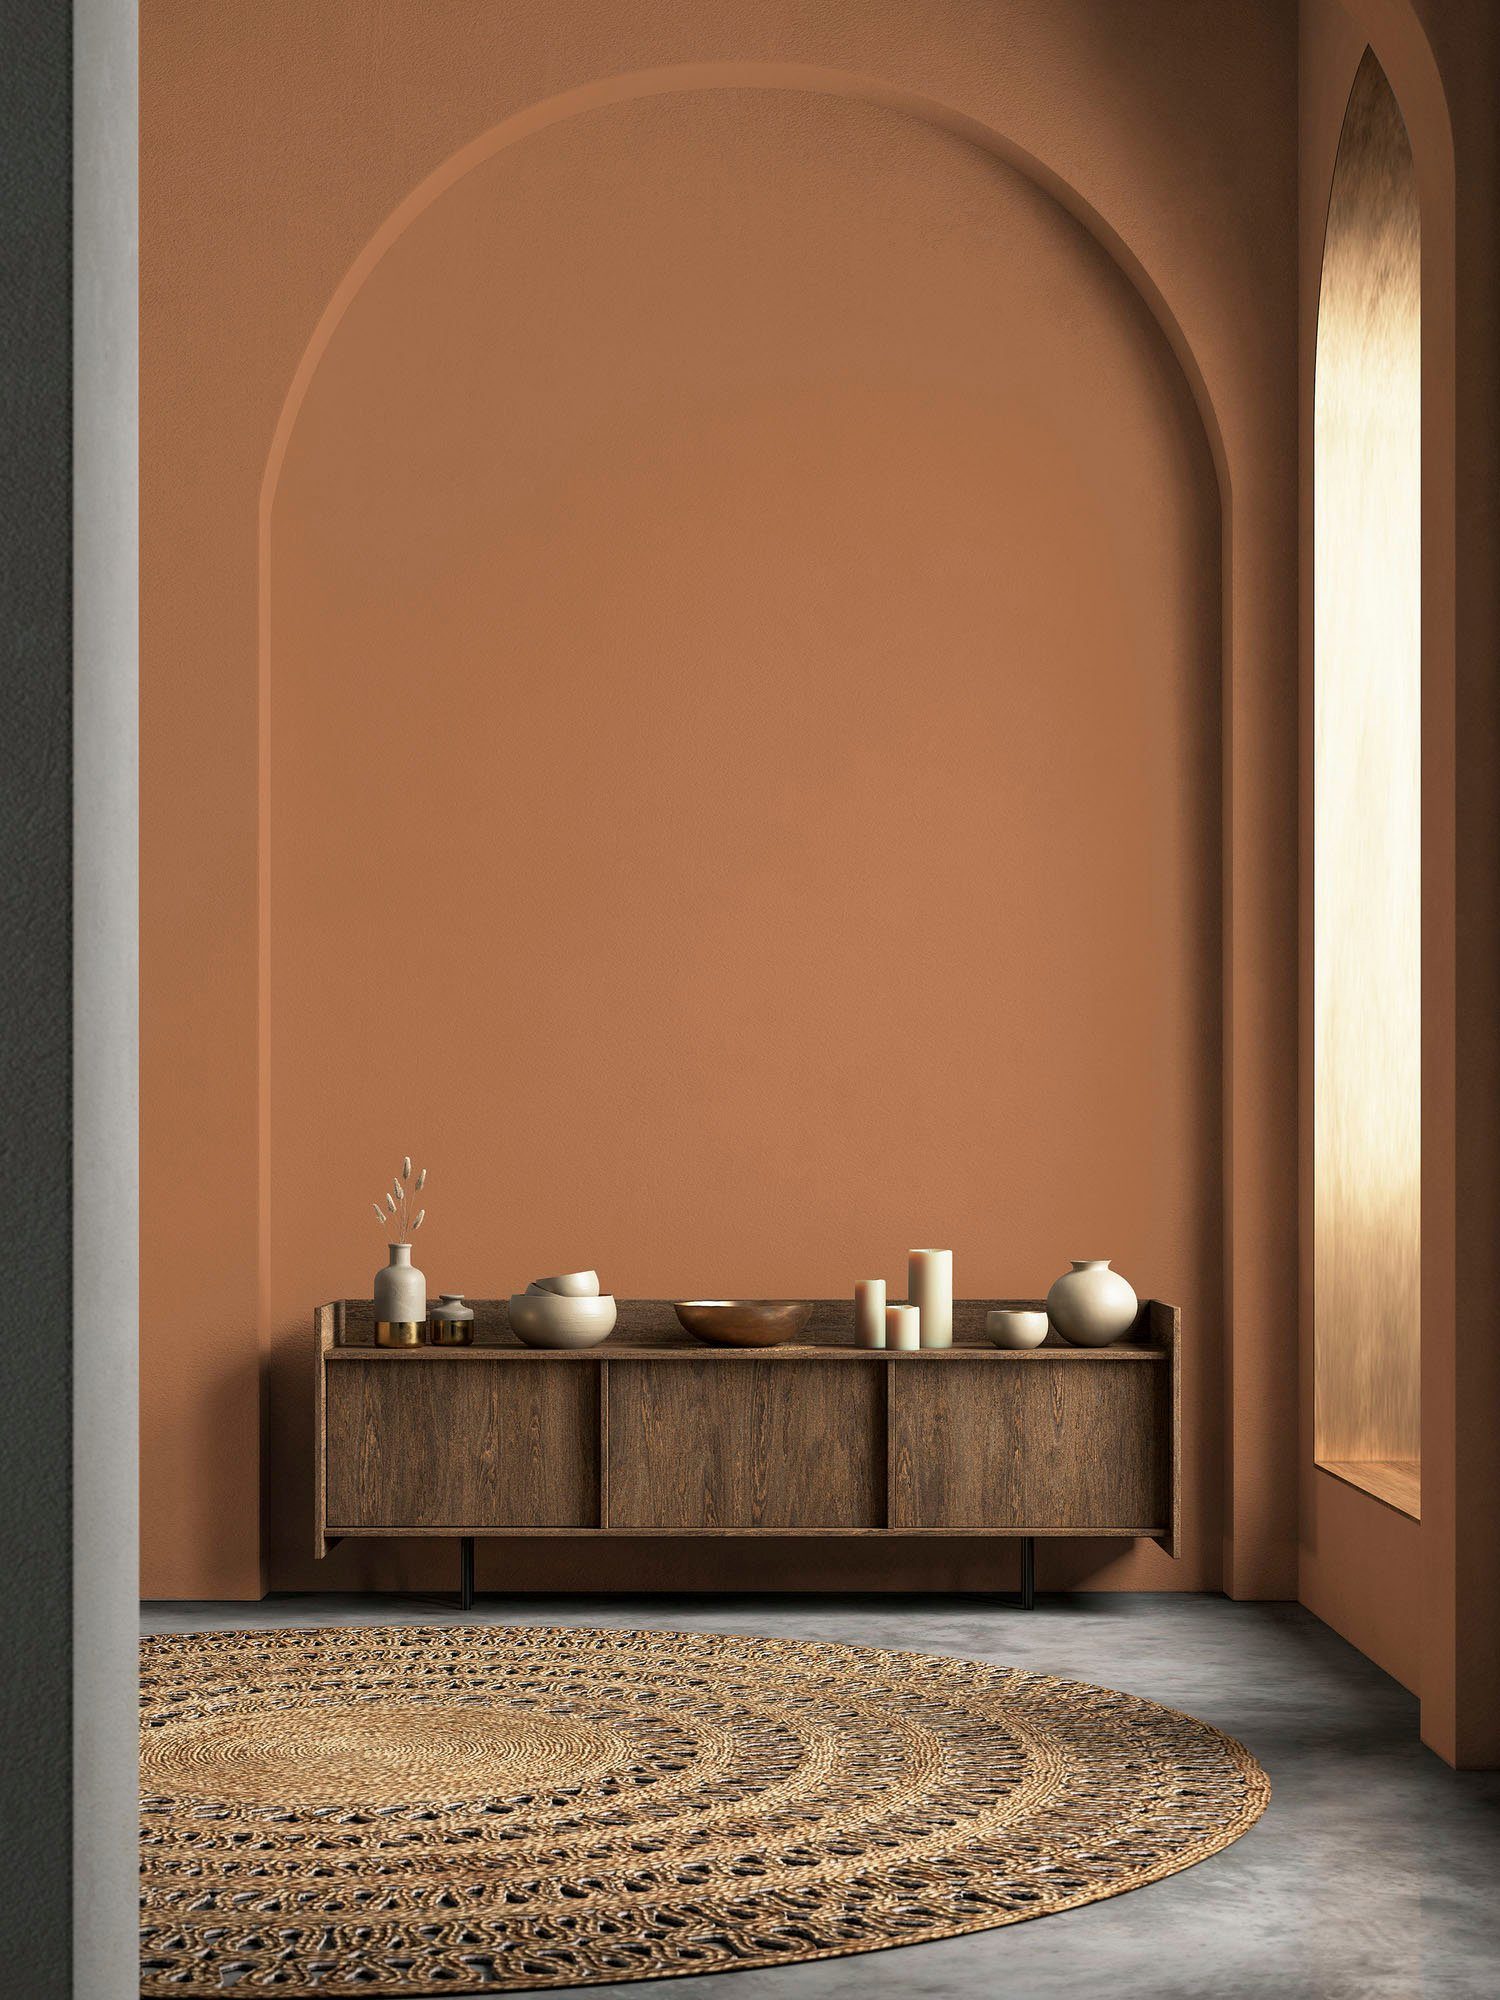 Wohnzimmer, A.S. ideal Tuchmatt orange Premium Flur Création Farbwelt Innenwandfarbe dusty PURO c9004 dusty Wandfarbe orange, Küche, Schlafzimmer, Orange für und